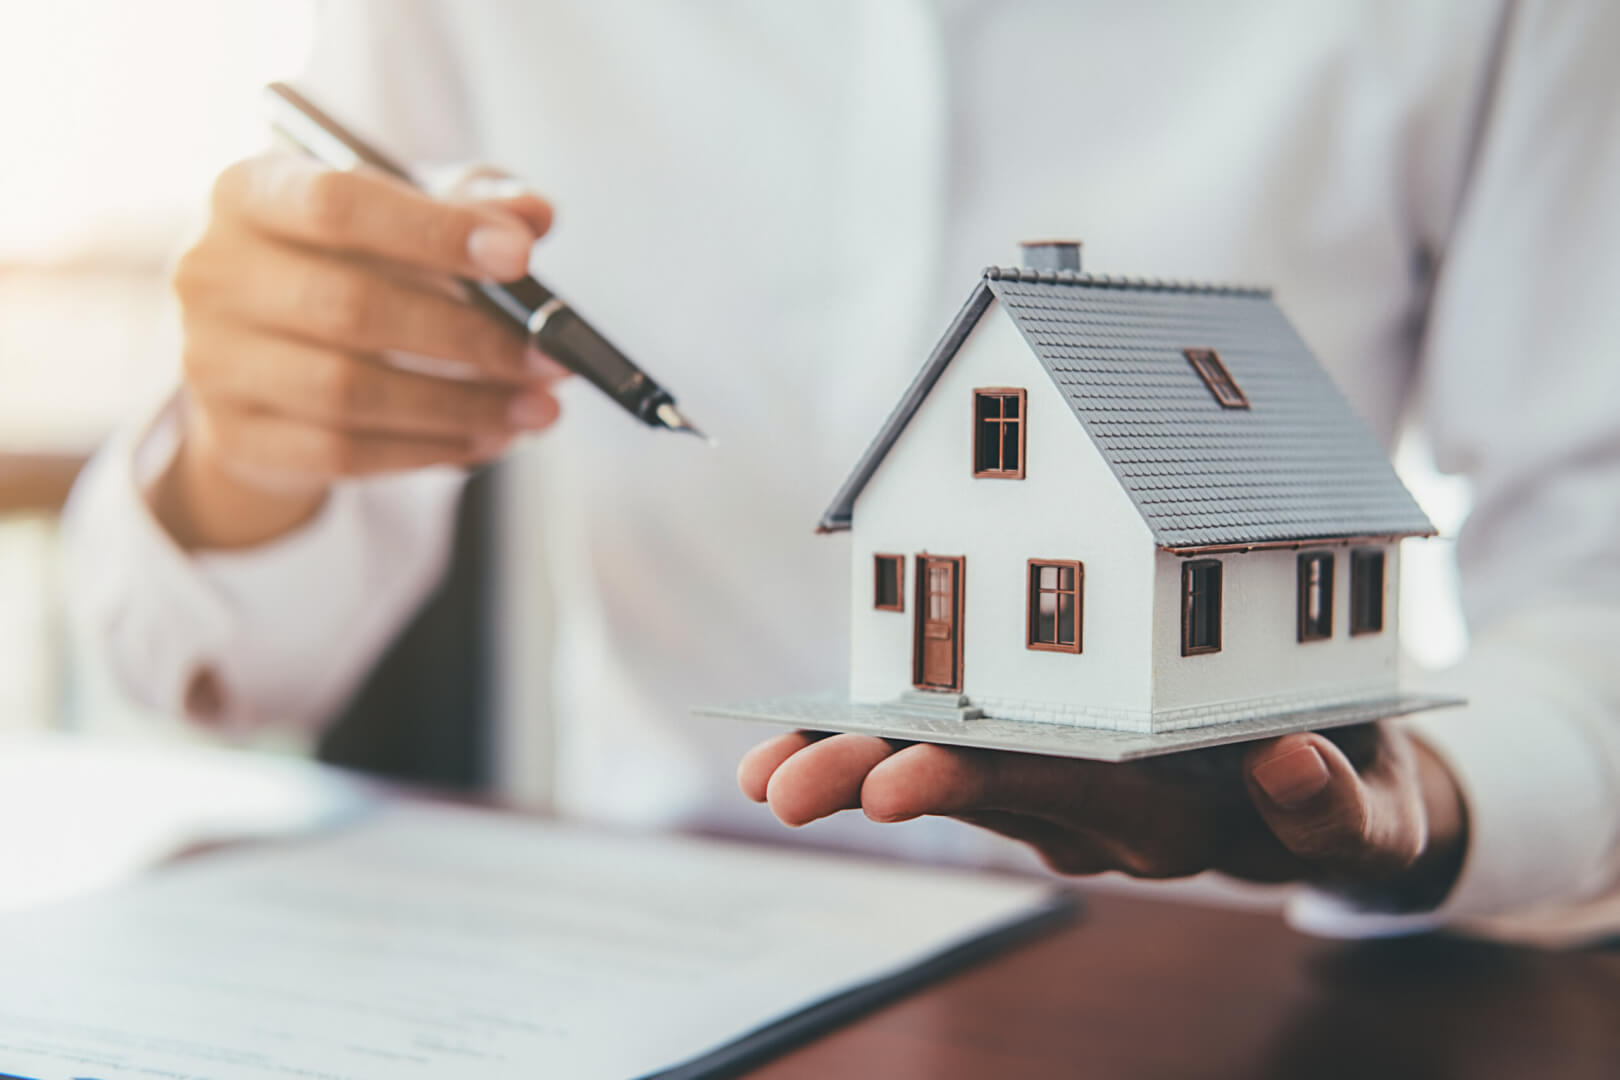 Una imagen de una persona sosteniendo un bolígrafo y una maqueta de una casa simbolizando la compra de una vivienda